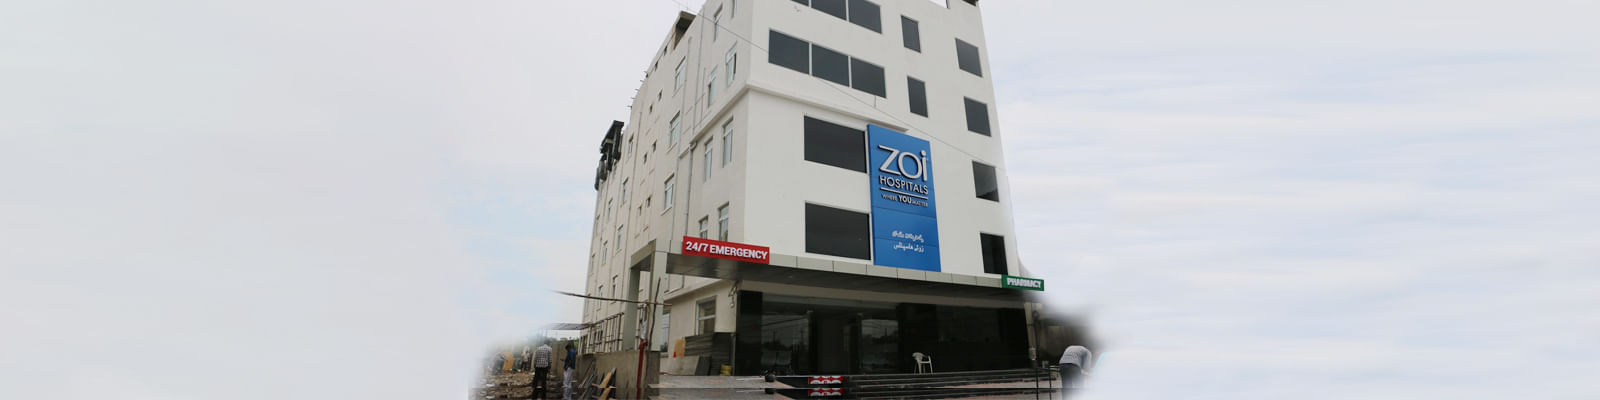 Zoi Hospital